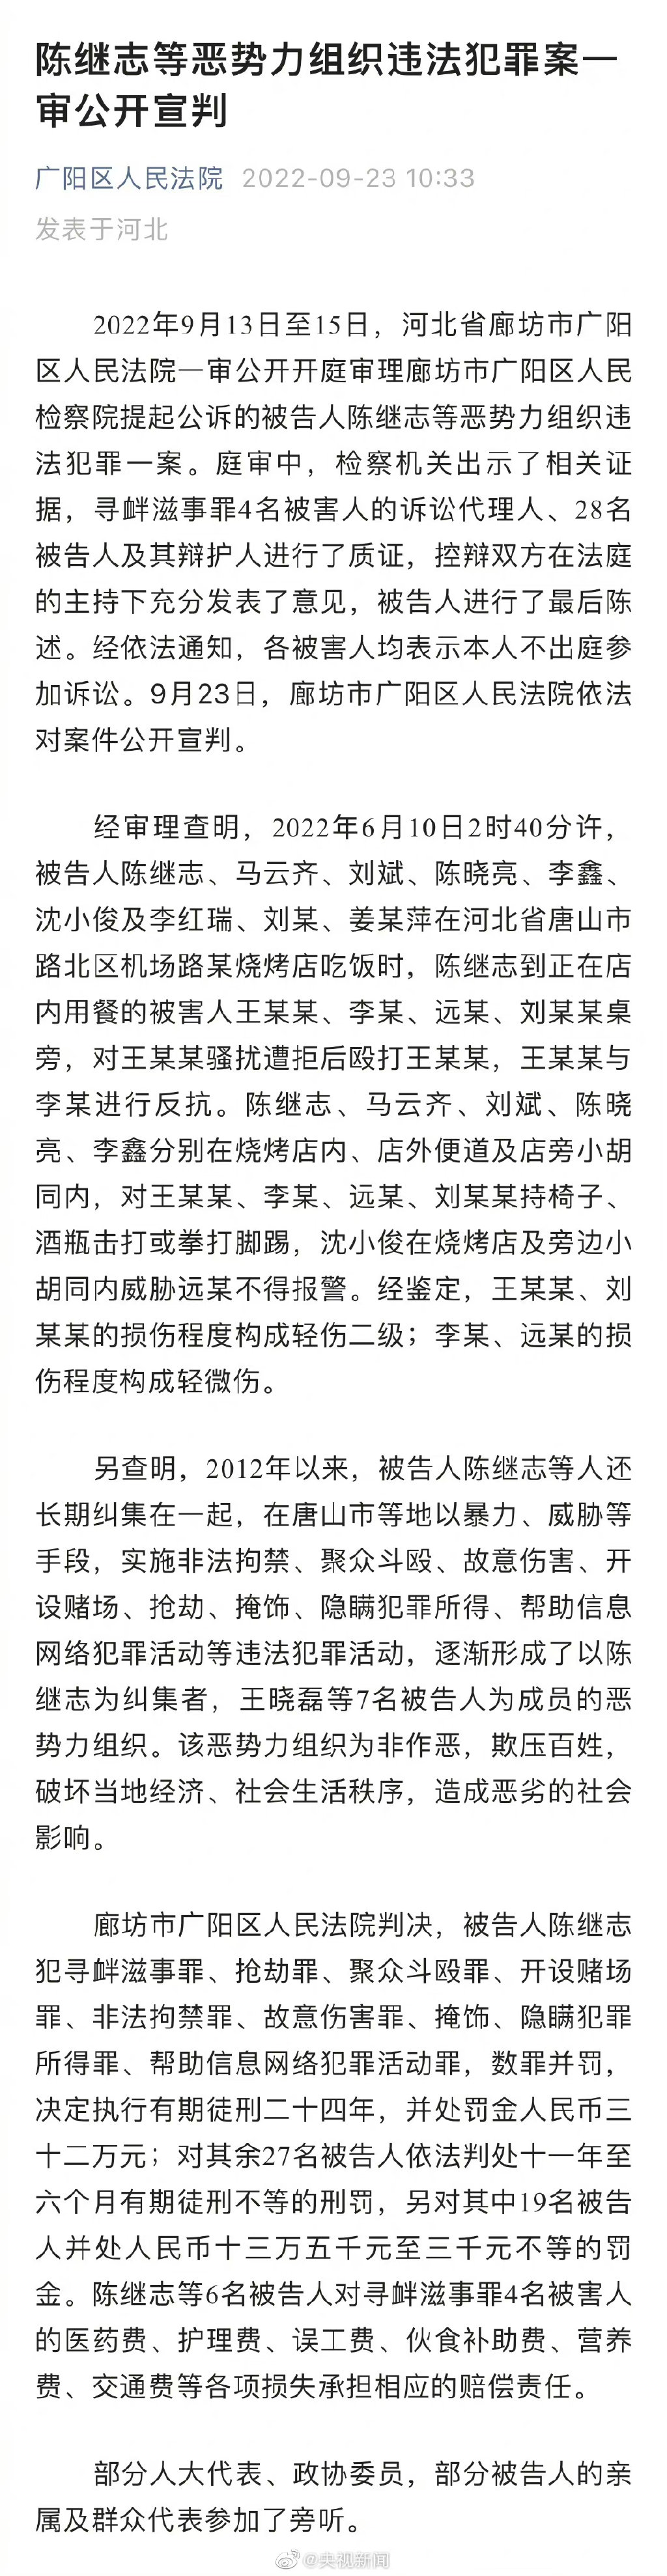 唐山打人案主犯 陳繼志 一審被判24年